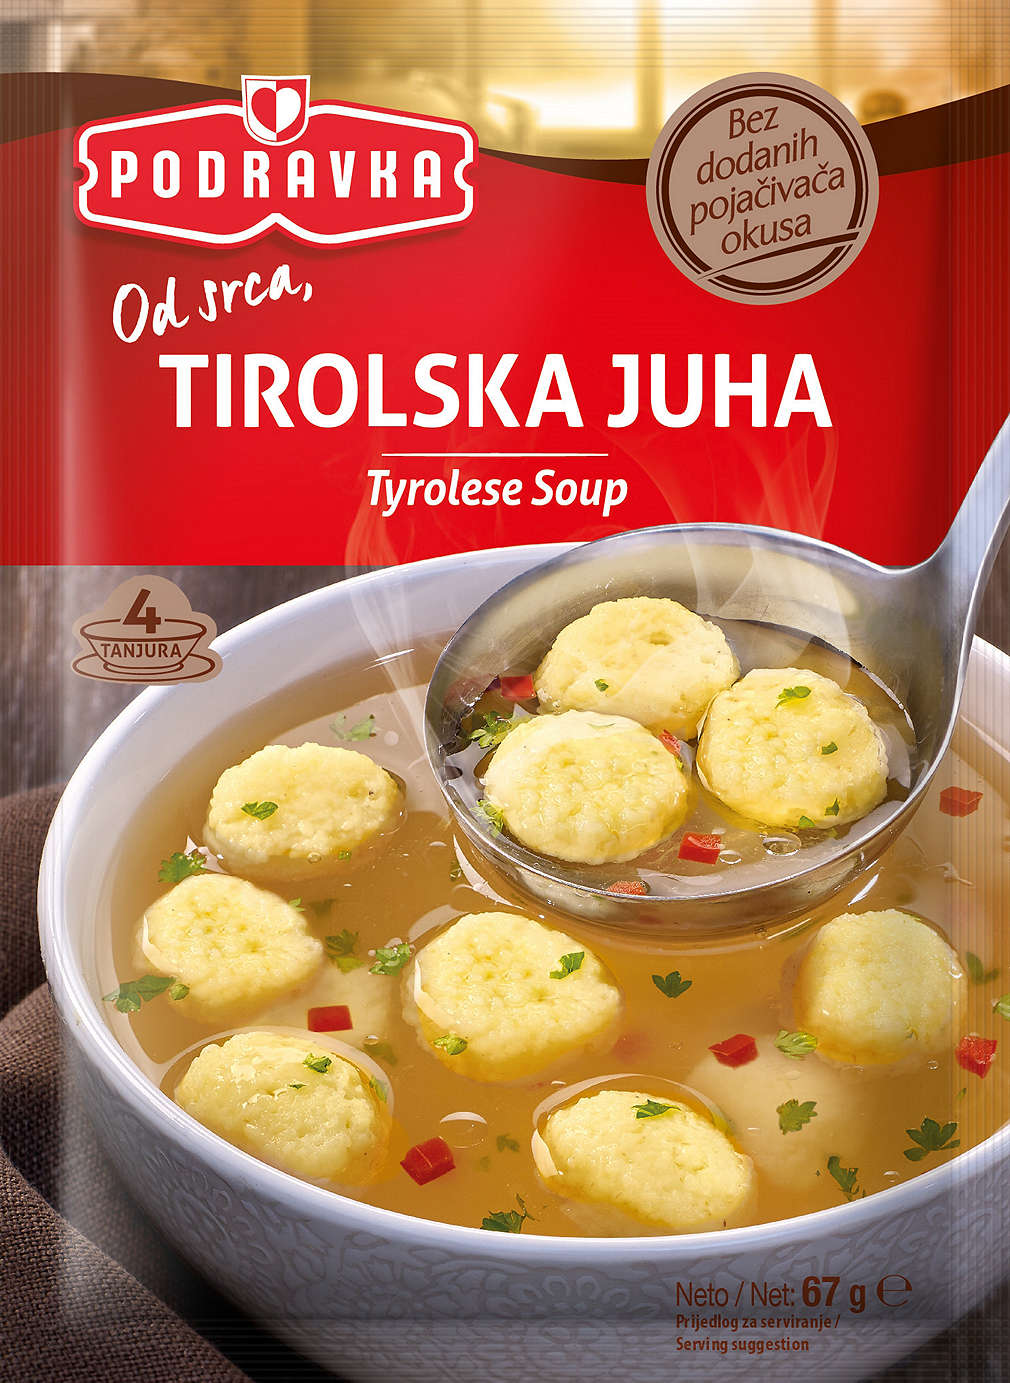 Fotografija ponude Podravka Tirolska juha